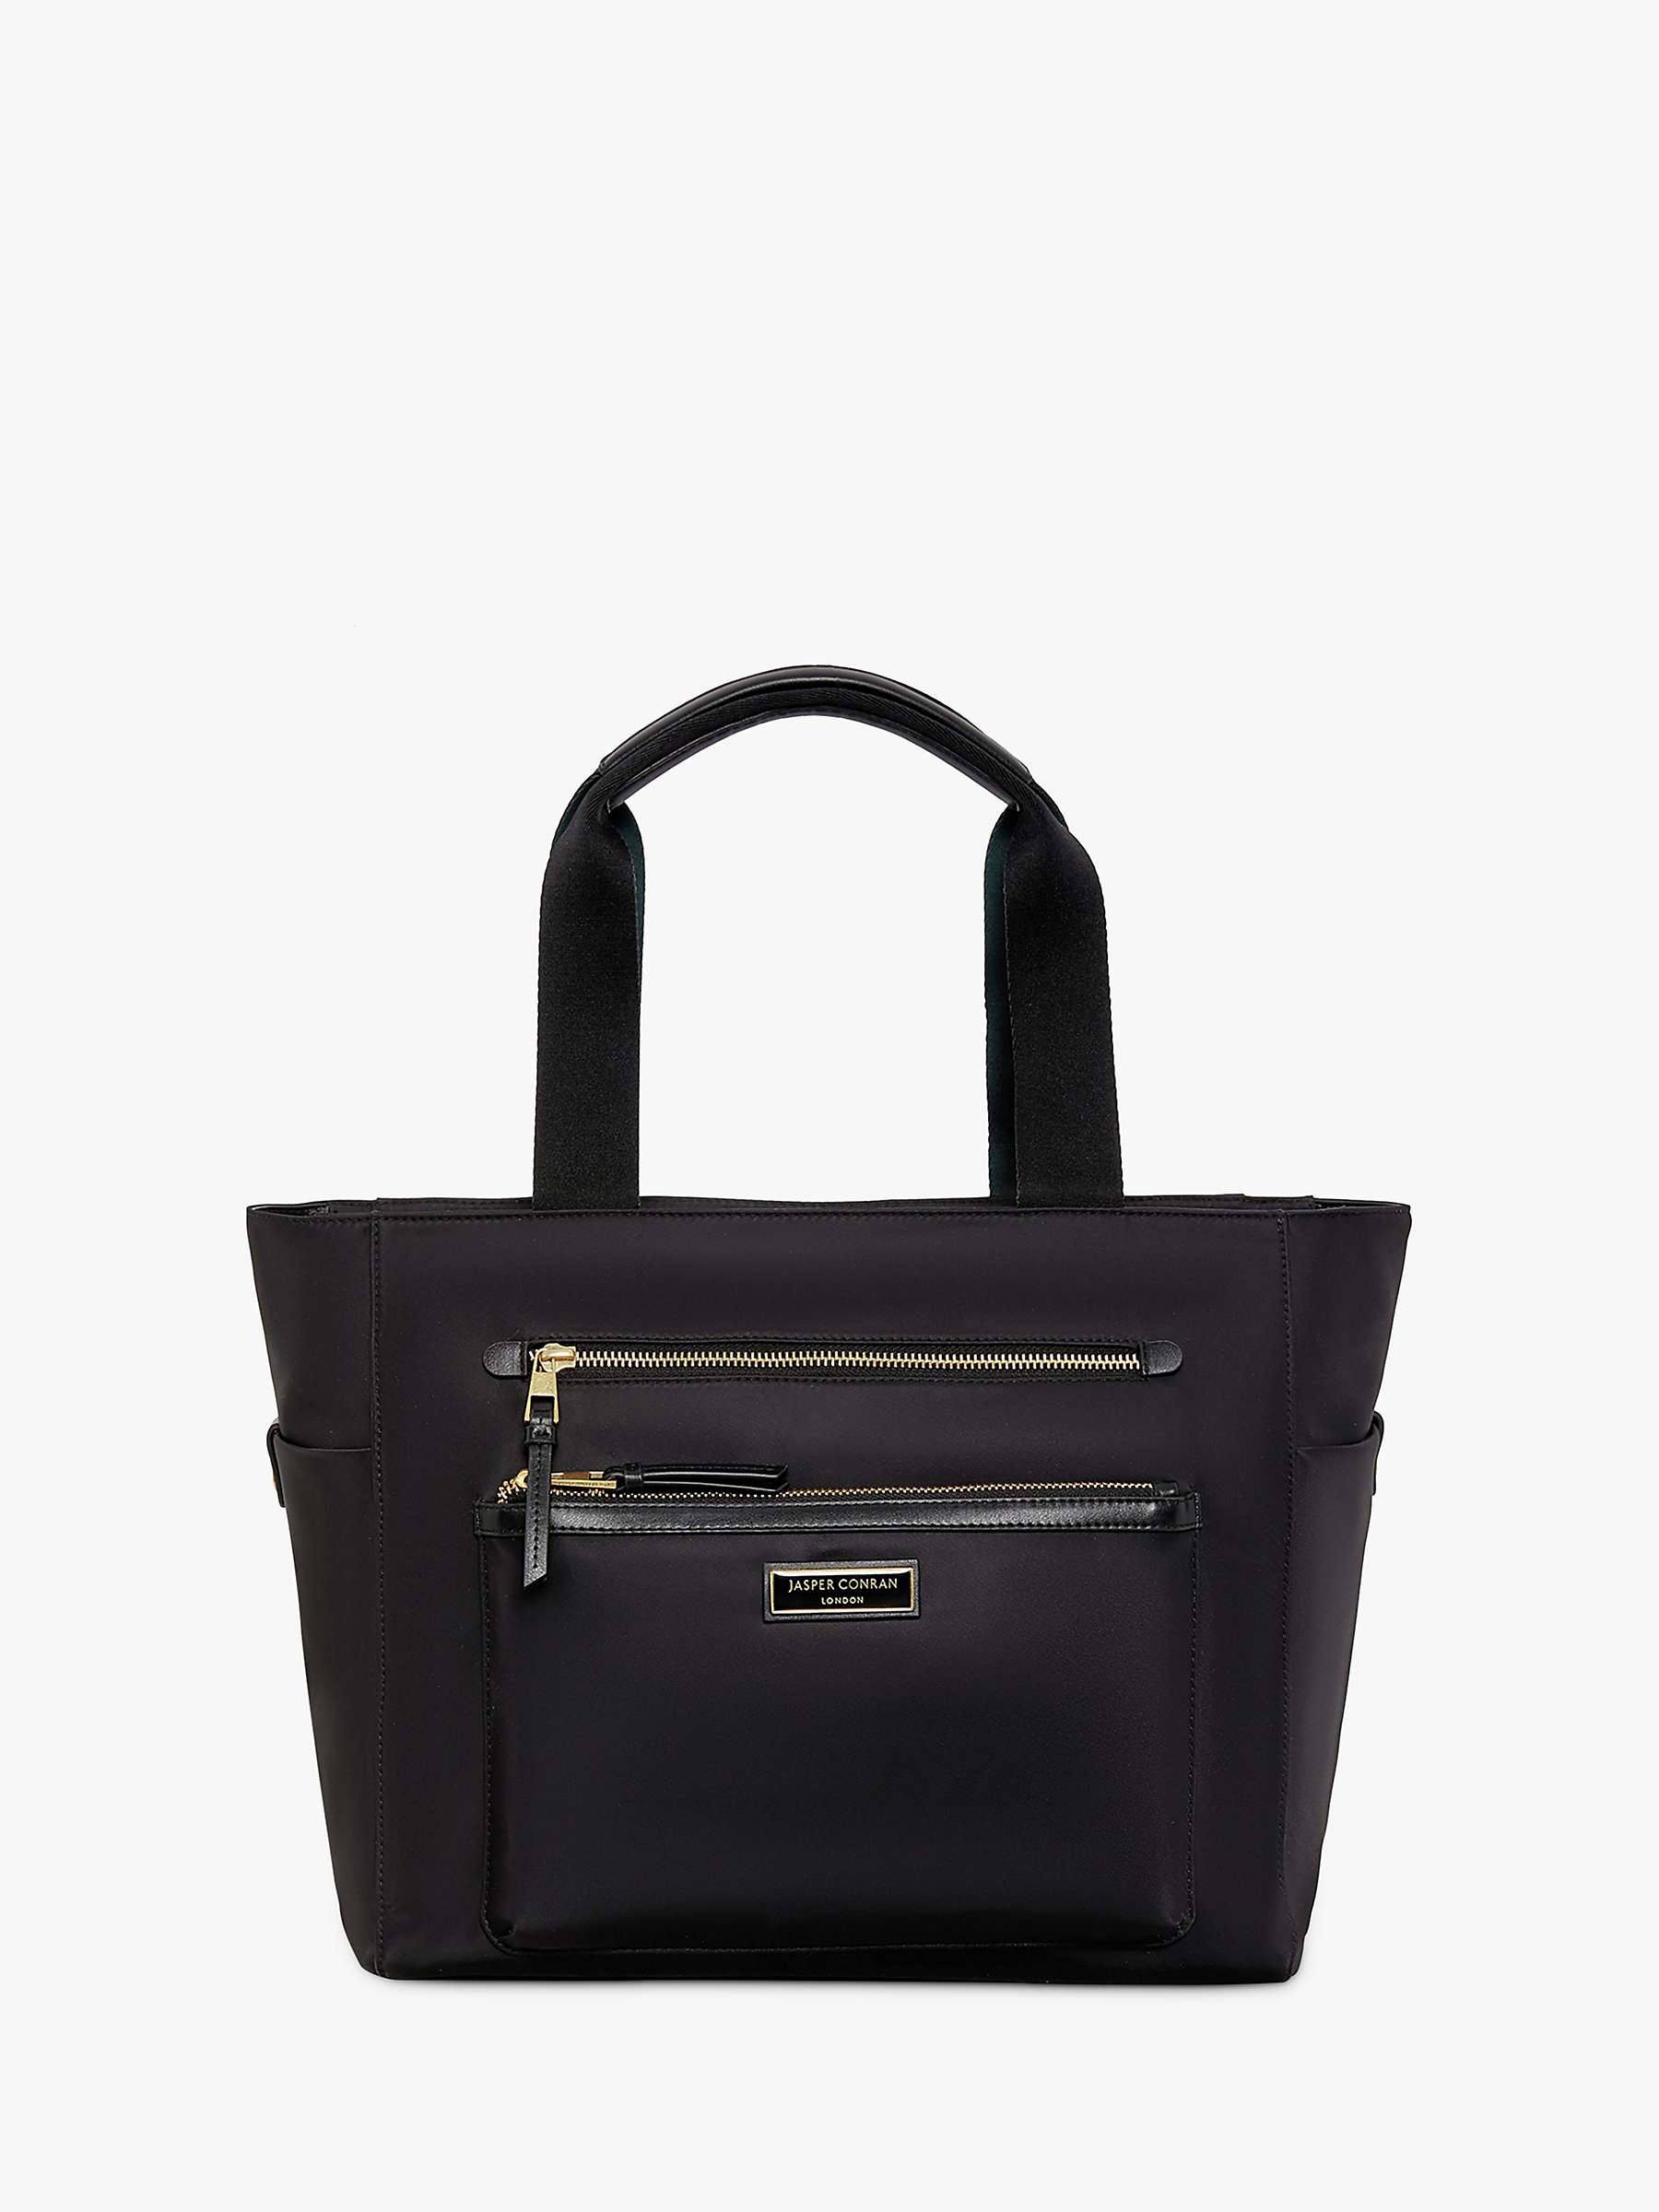 Buy Jasper Conran Carmen Tote Bag, Black Online at johnlewis.com